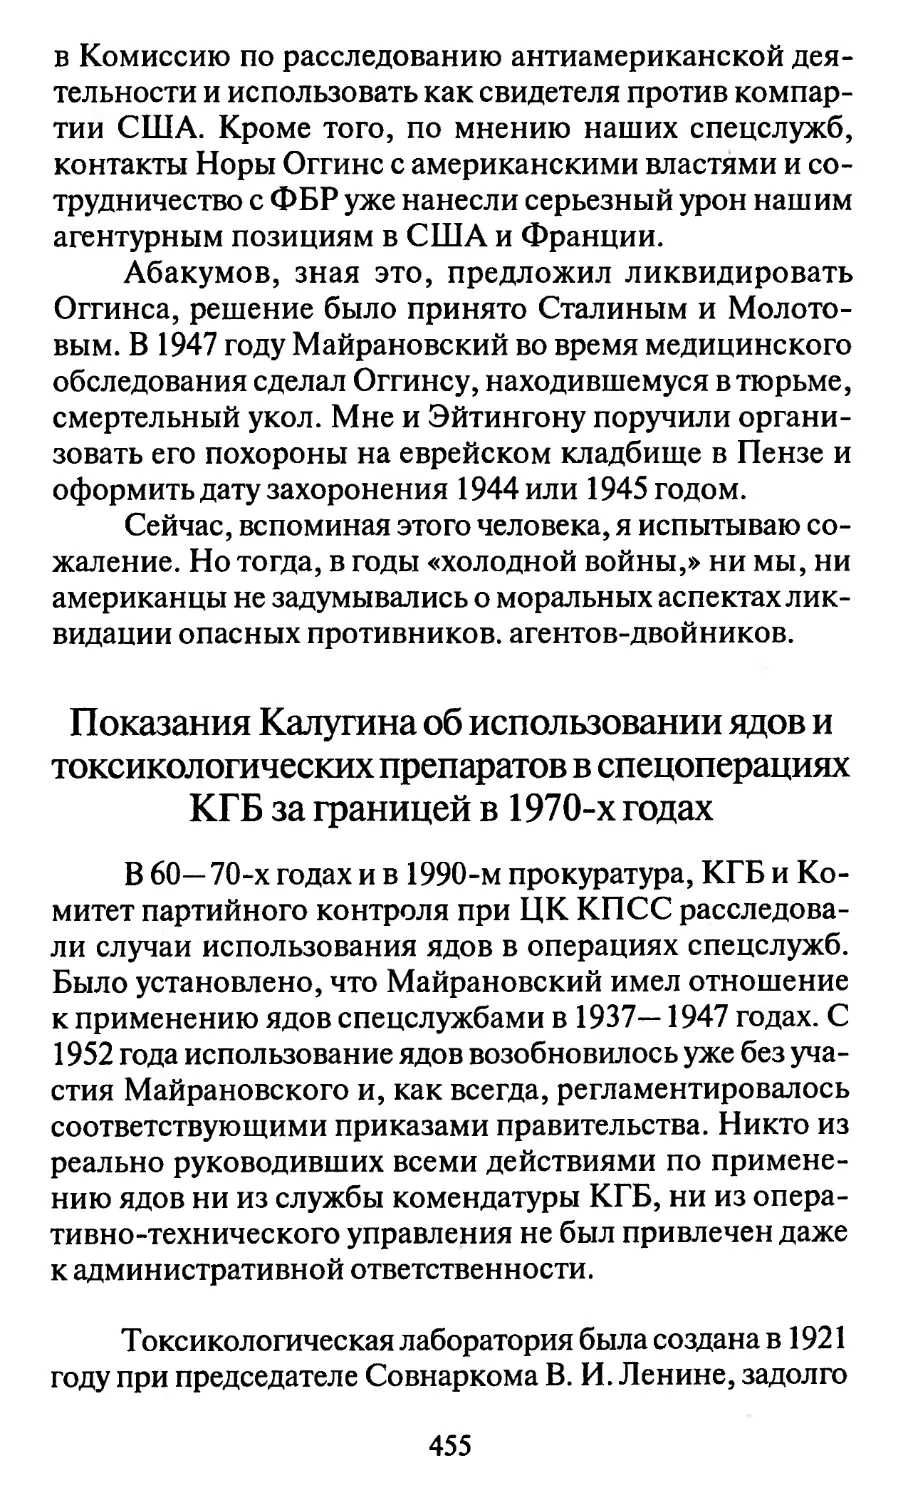 Показания Калугина об использовании ядов и токсикологических препаратов в спецоперациях КГБ за границей в 1970-х годах